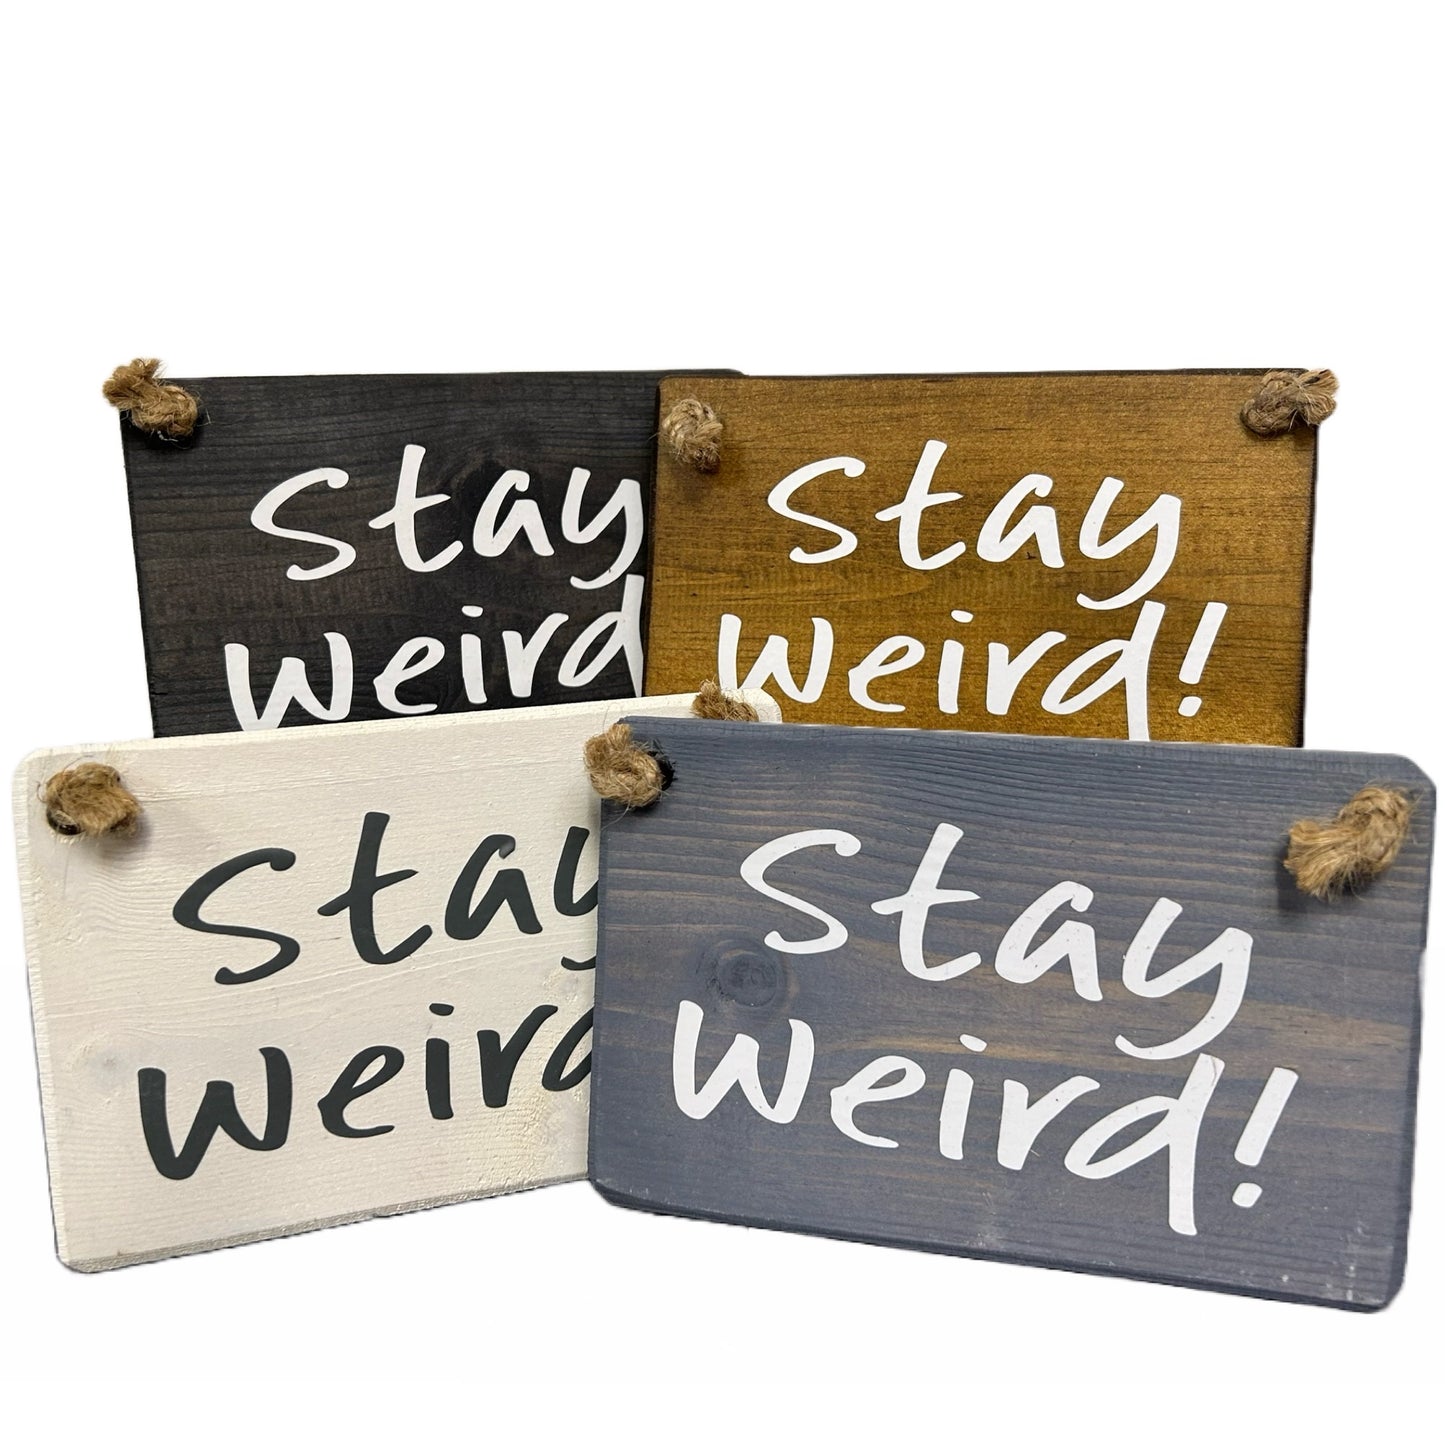 Stay Weird!